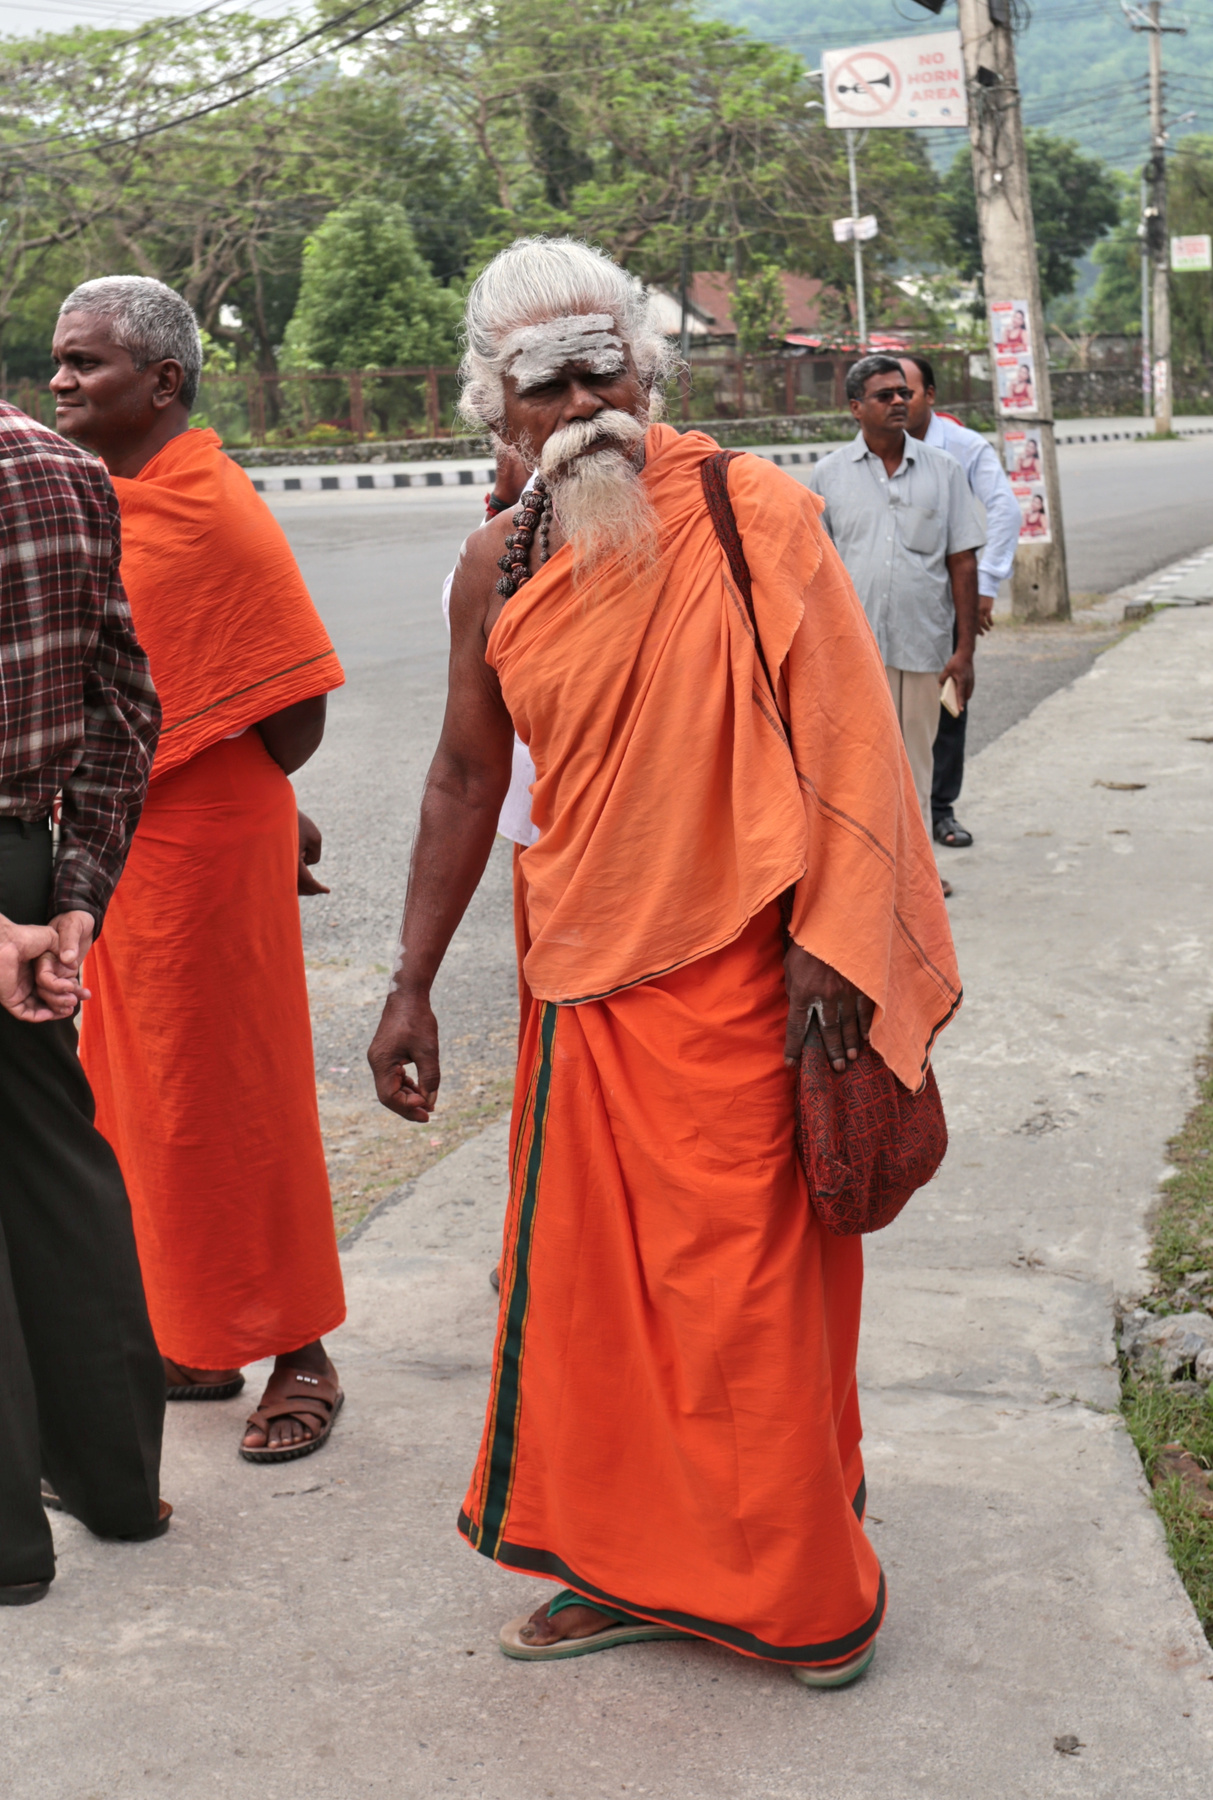 Служитель богов Непал Покхара монах индуист садху